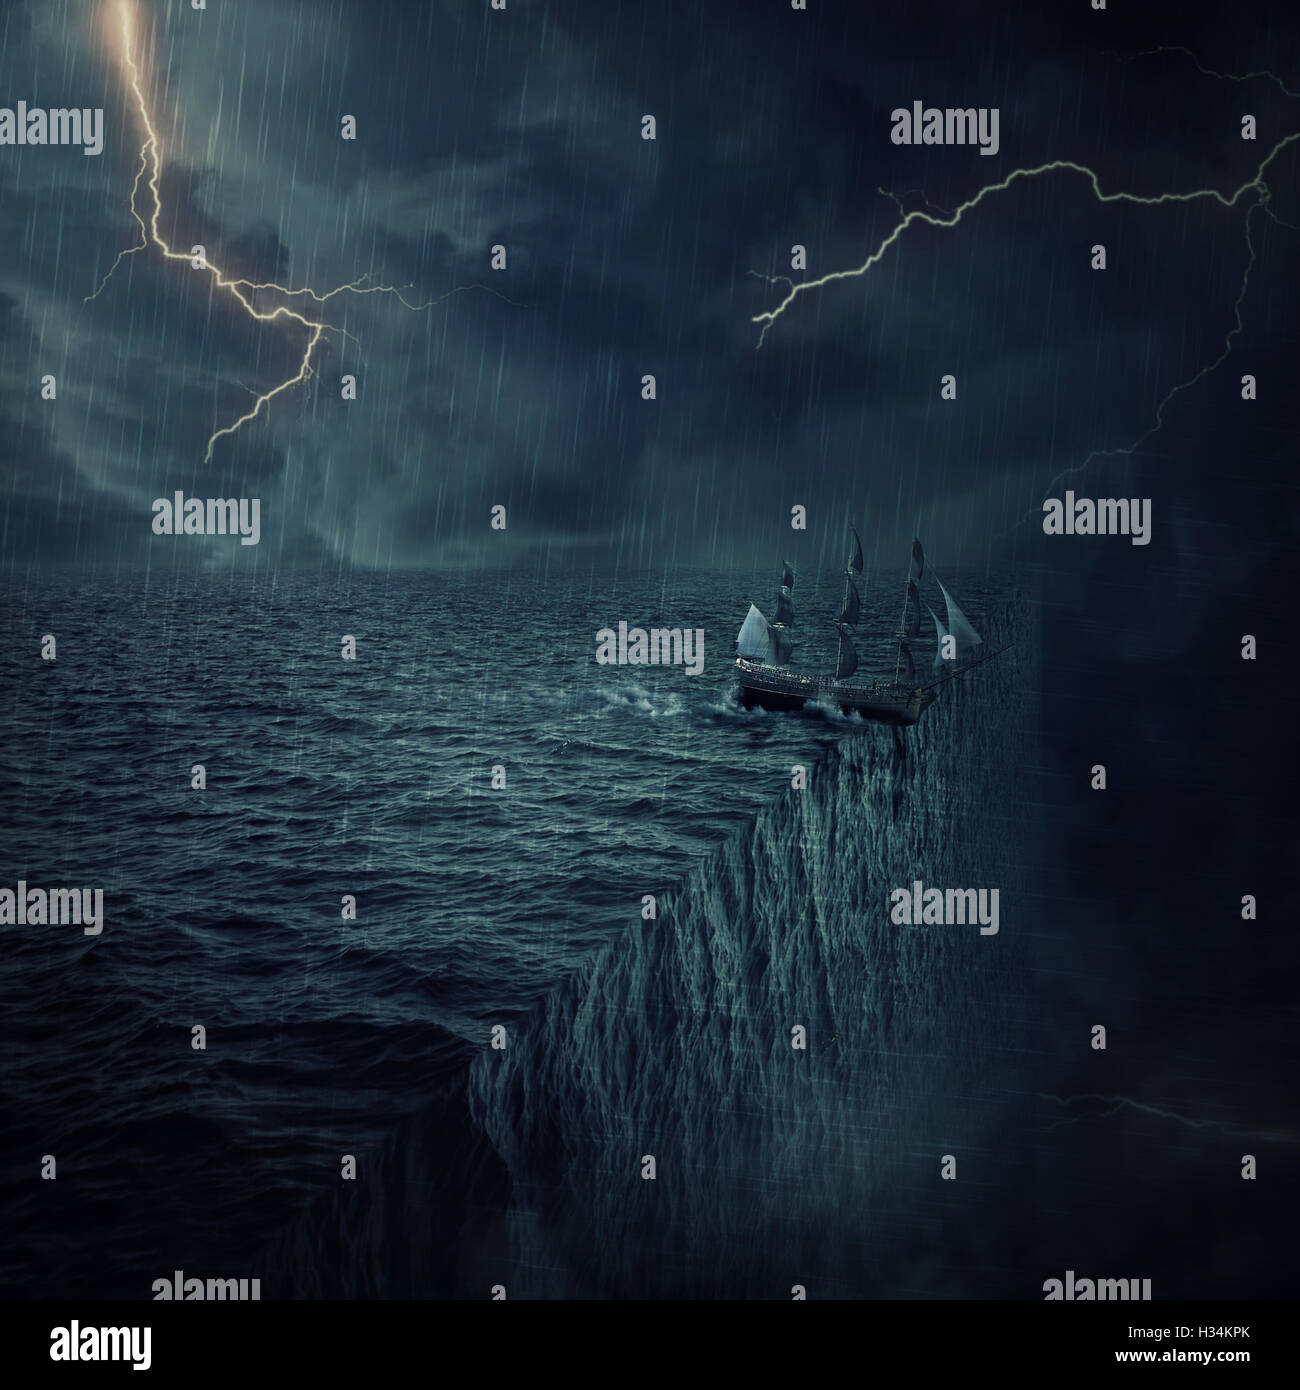 Jahrgang, alte Schiff Segeln im Ozean verloren in einer stürmischen Nacht mit Blitze am Himmel. Abenteuer und Reise-Konzept. Paralle Stockfoto